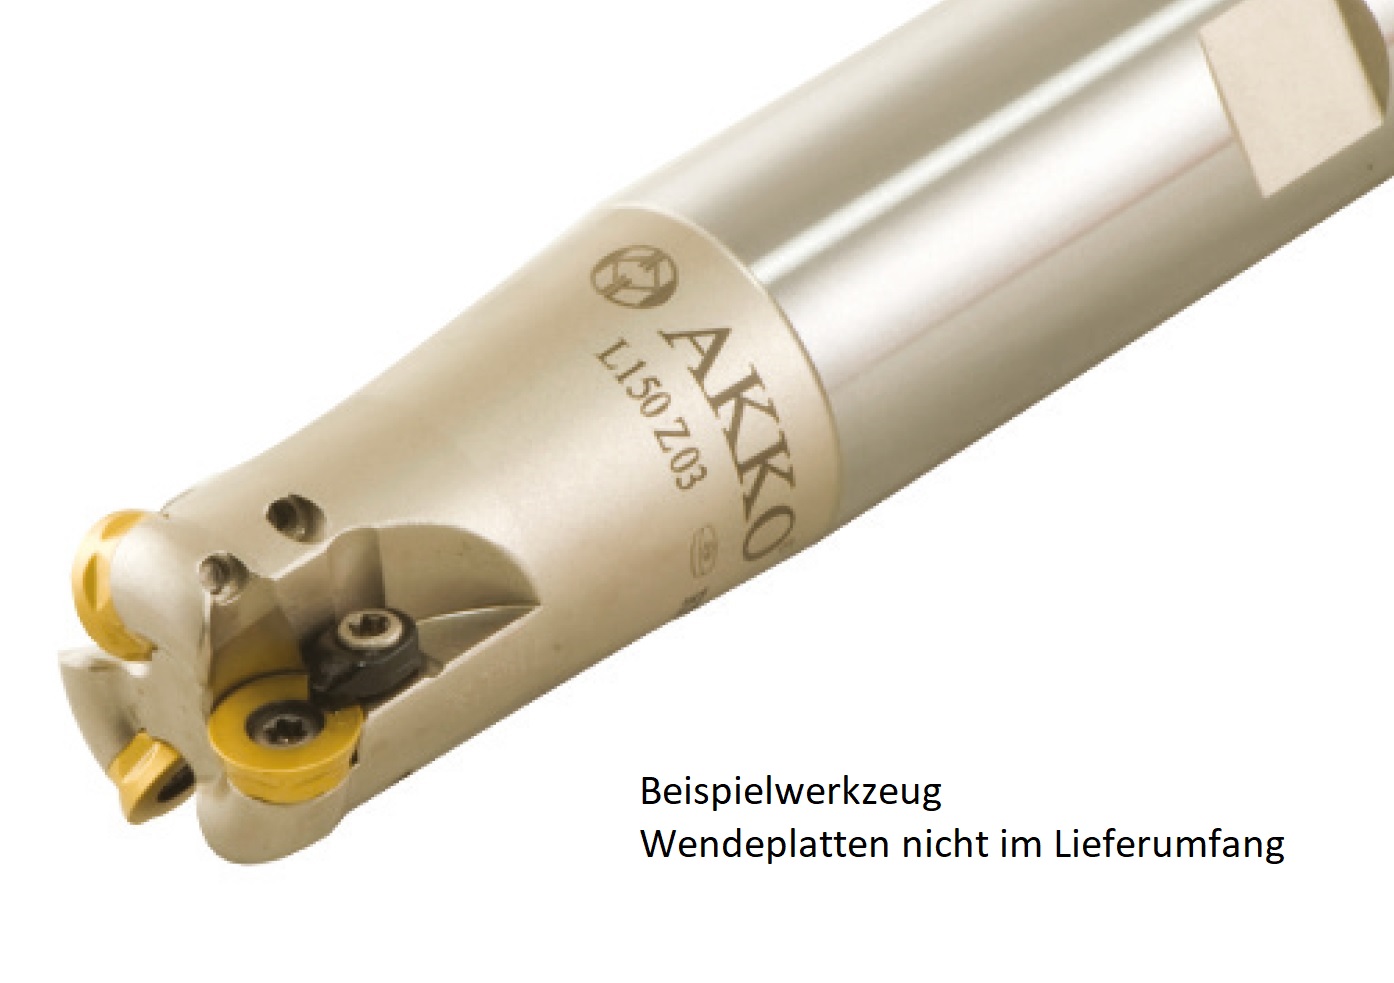 AKKO-Hochvorschub-Schaftfräser ø 25 mm für Wendeplatten, kompatibel mit ISO RD.. 12T3
Schaft-ø 25, ohne Innenkühlung, Z=2